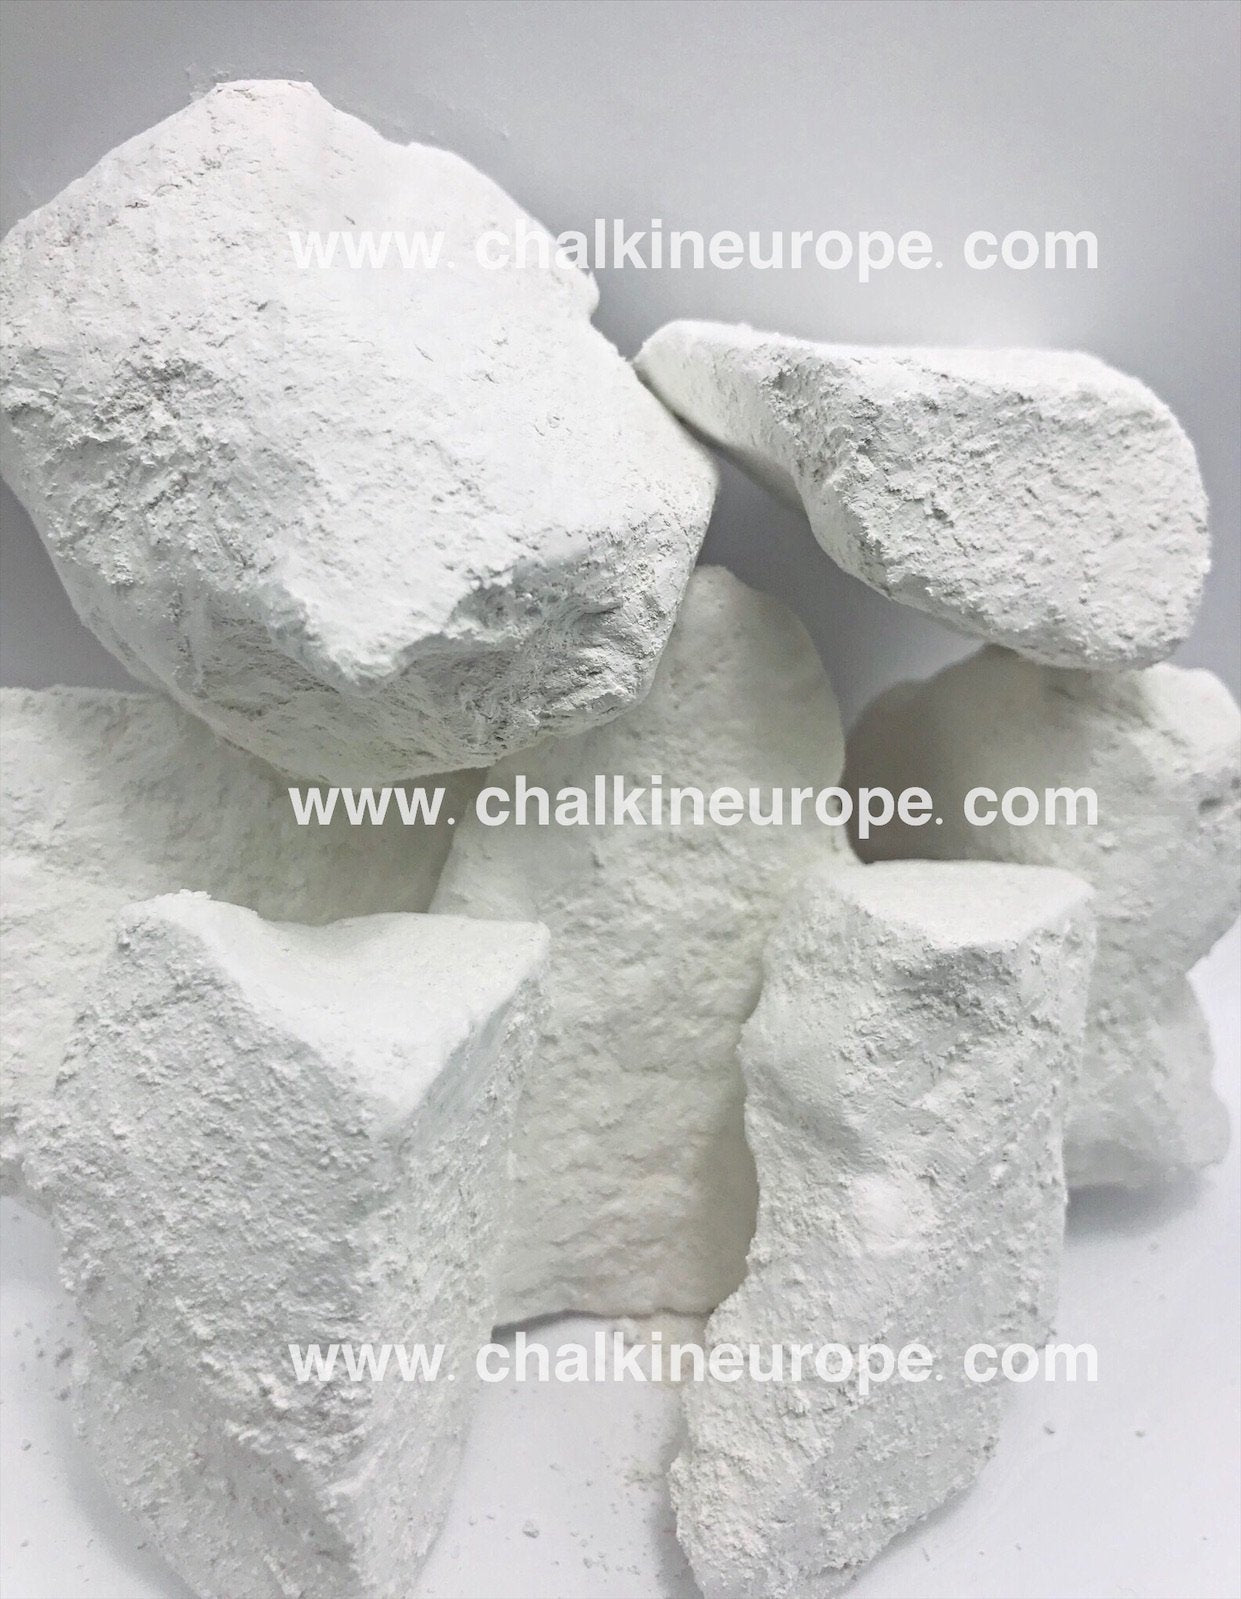 White Mountain Chalk - Chalkineurope